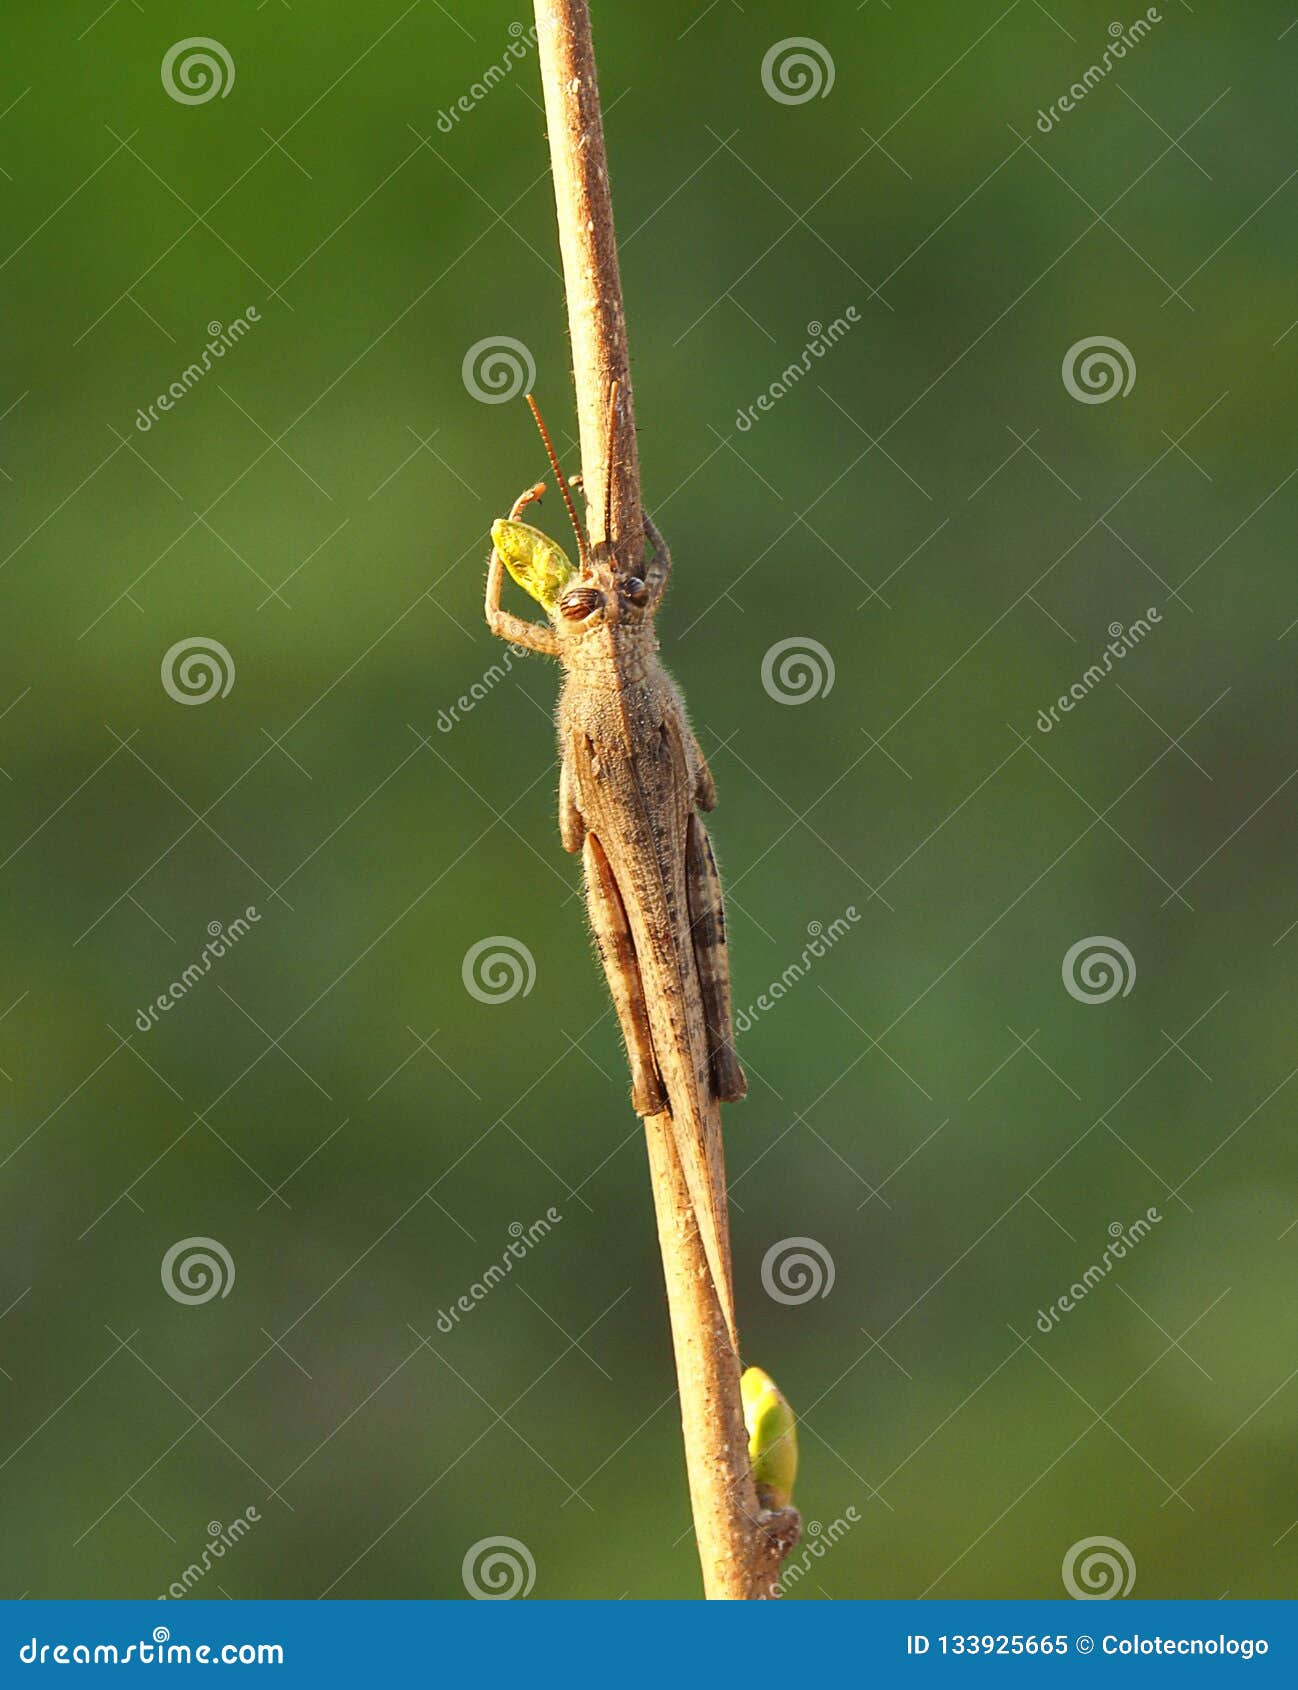 grasshoper in green background